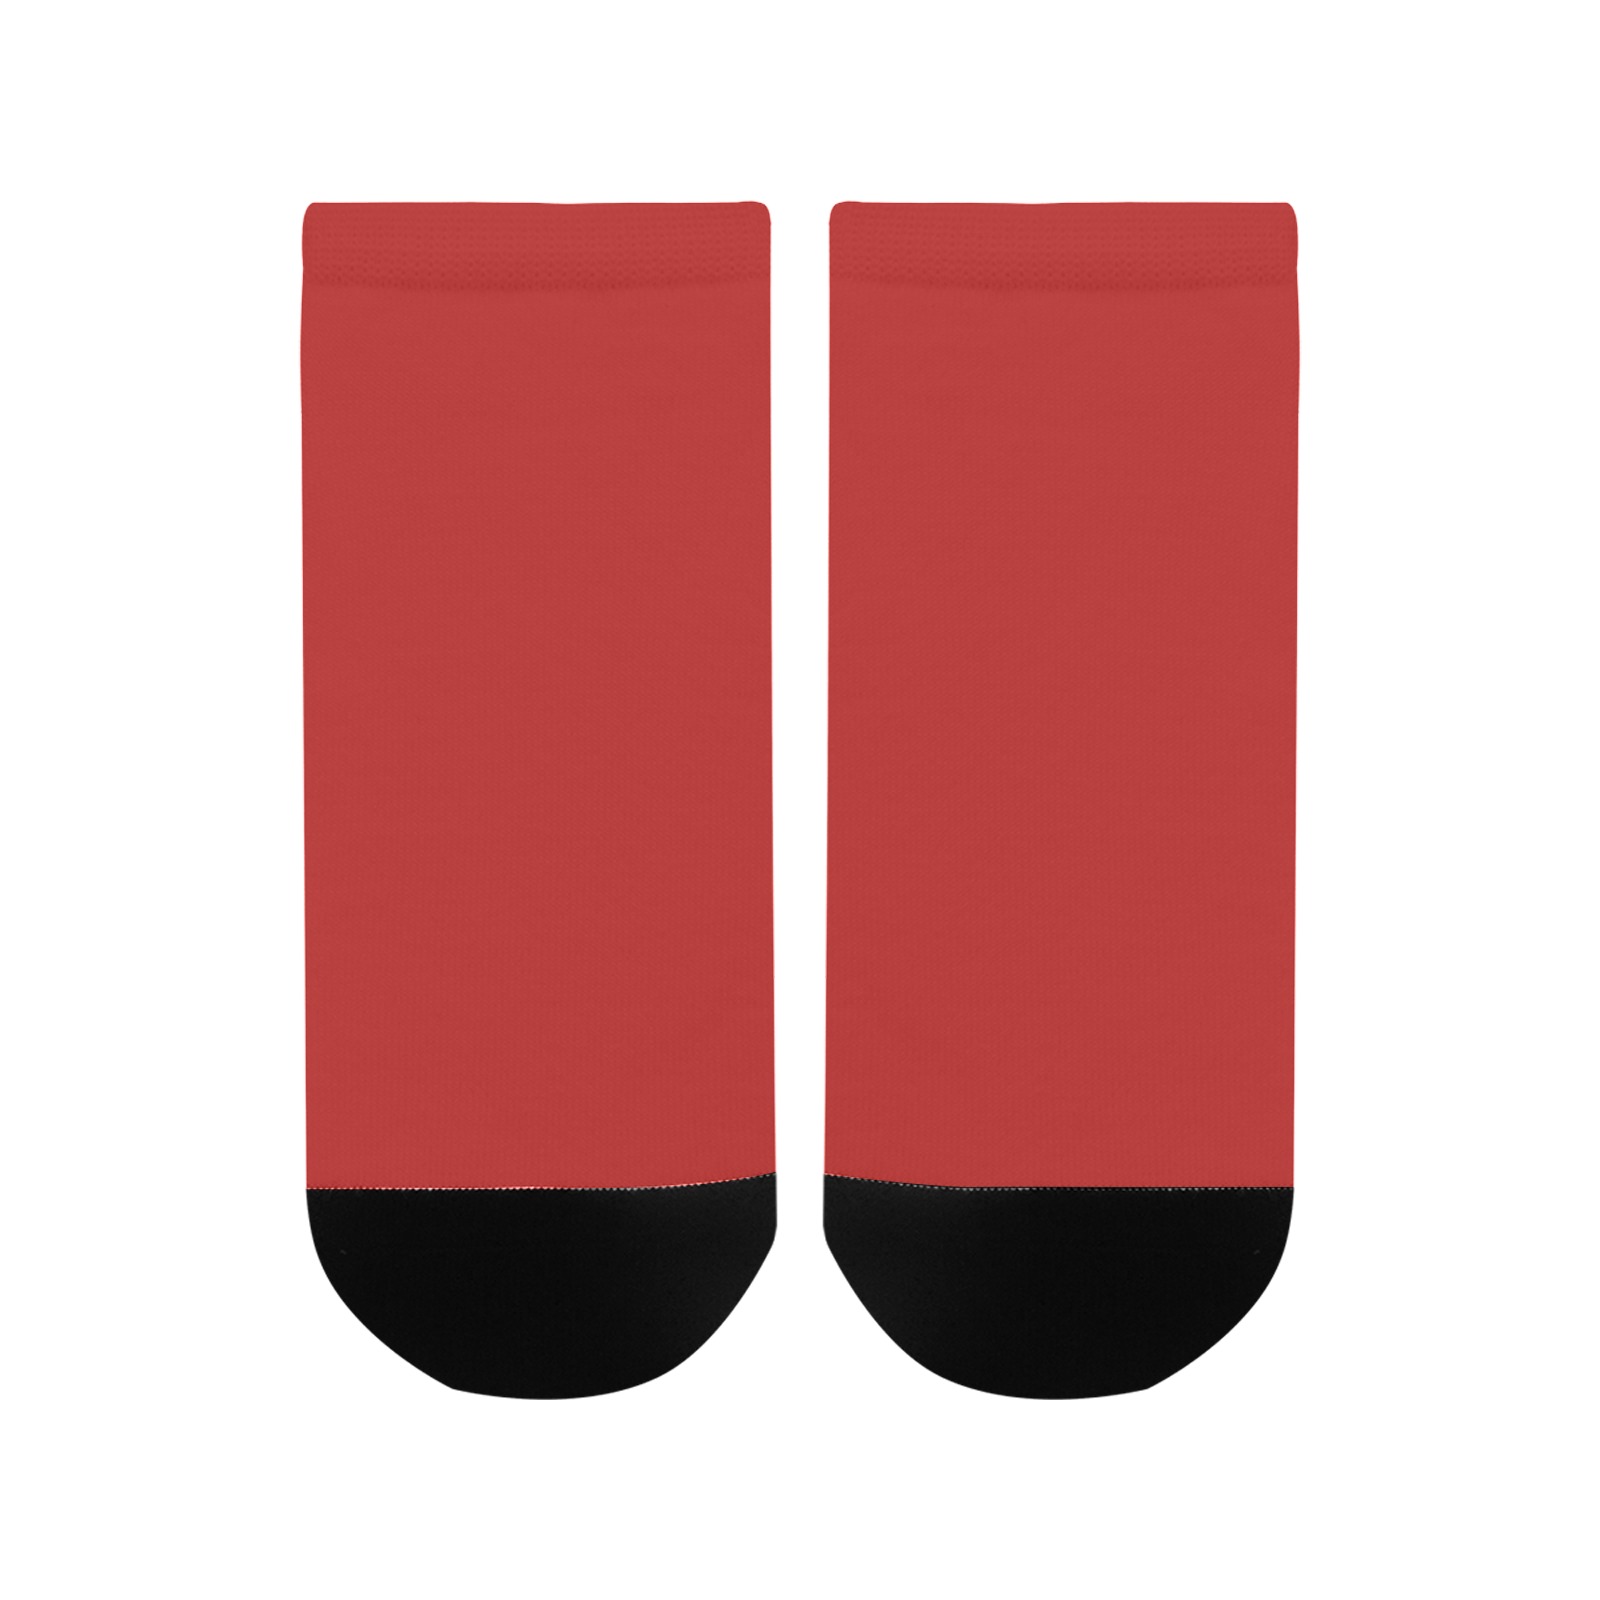 RED Men's Ankle Socks